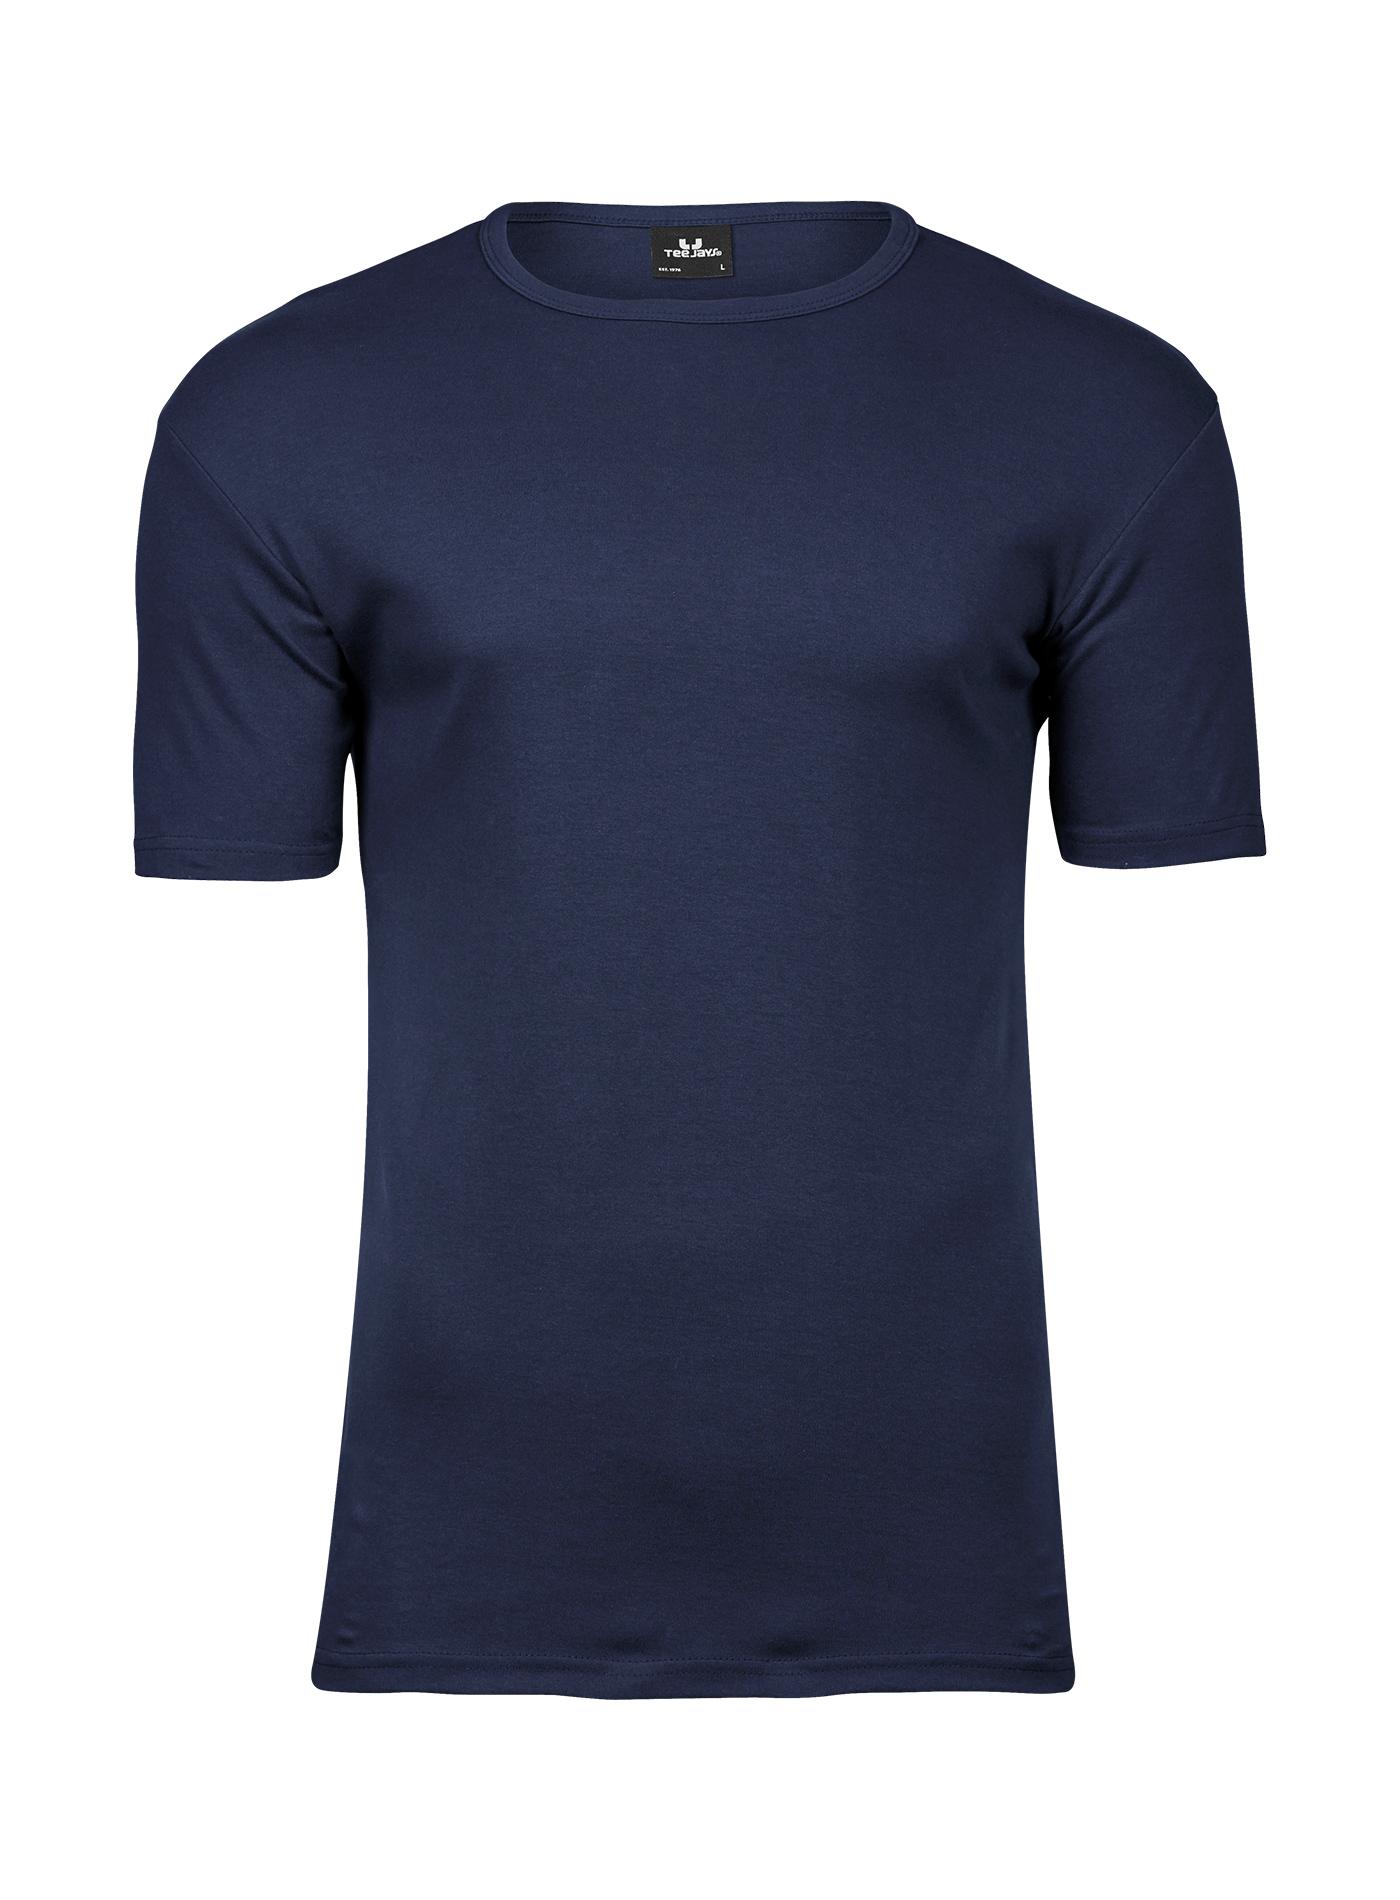 Silné bavlněné tričko Tee Jays Interlock - Námořní modrá XXL